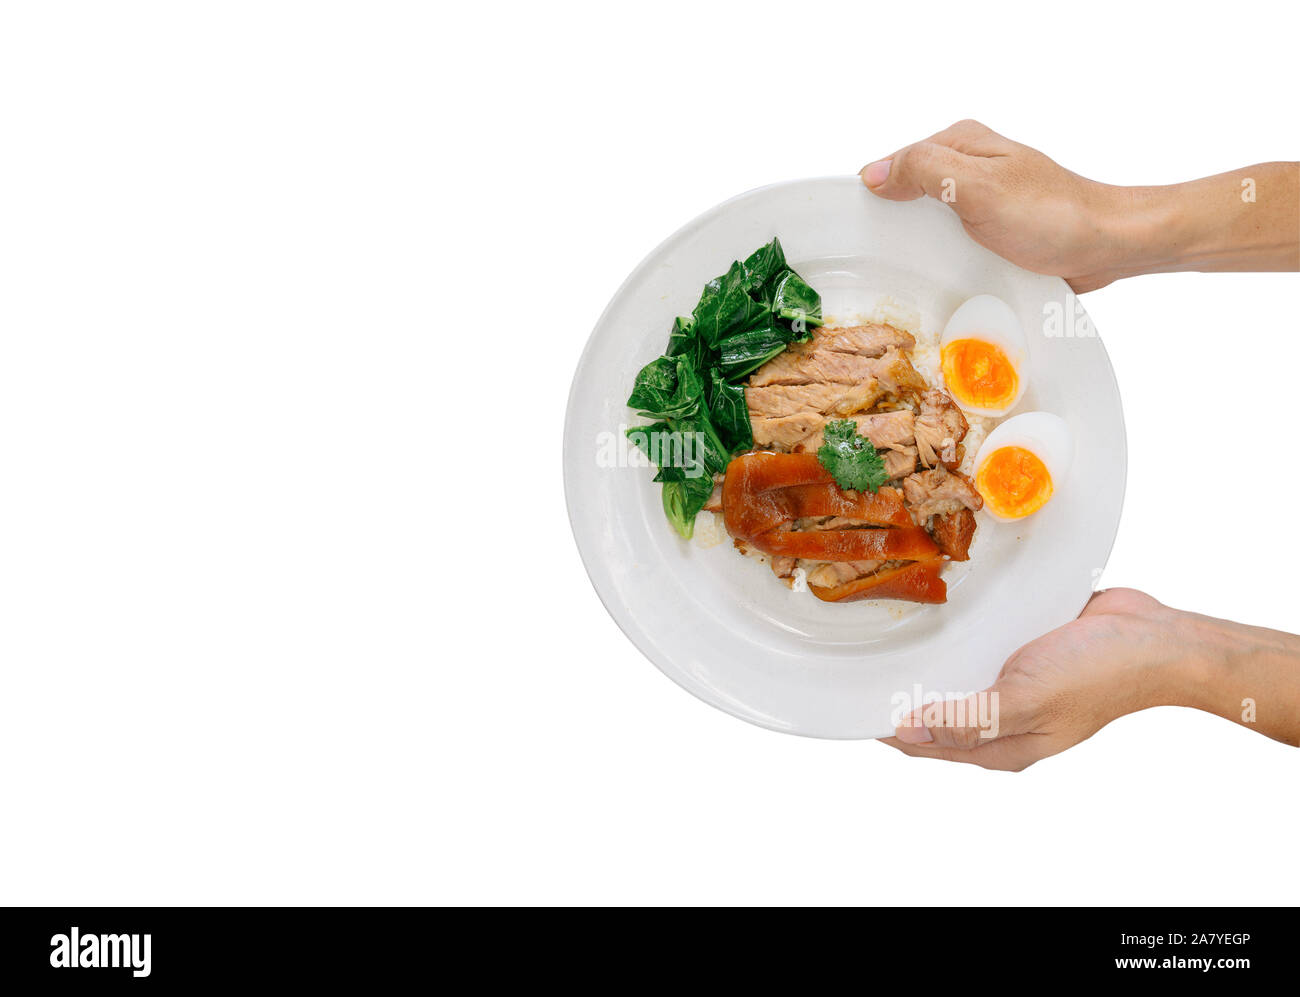 Hand, geschmortes Schweinefleisch Bein auf Reis auf weißem Hintergrund. Lecker essen, kalorienreiche Lebensmittel, Fast Food, haben viele Fett. Stockfoto